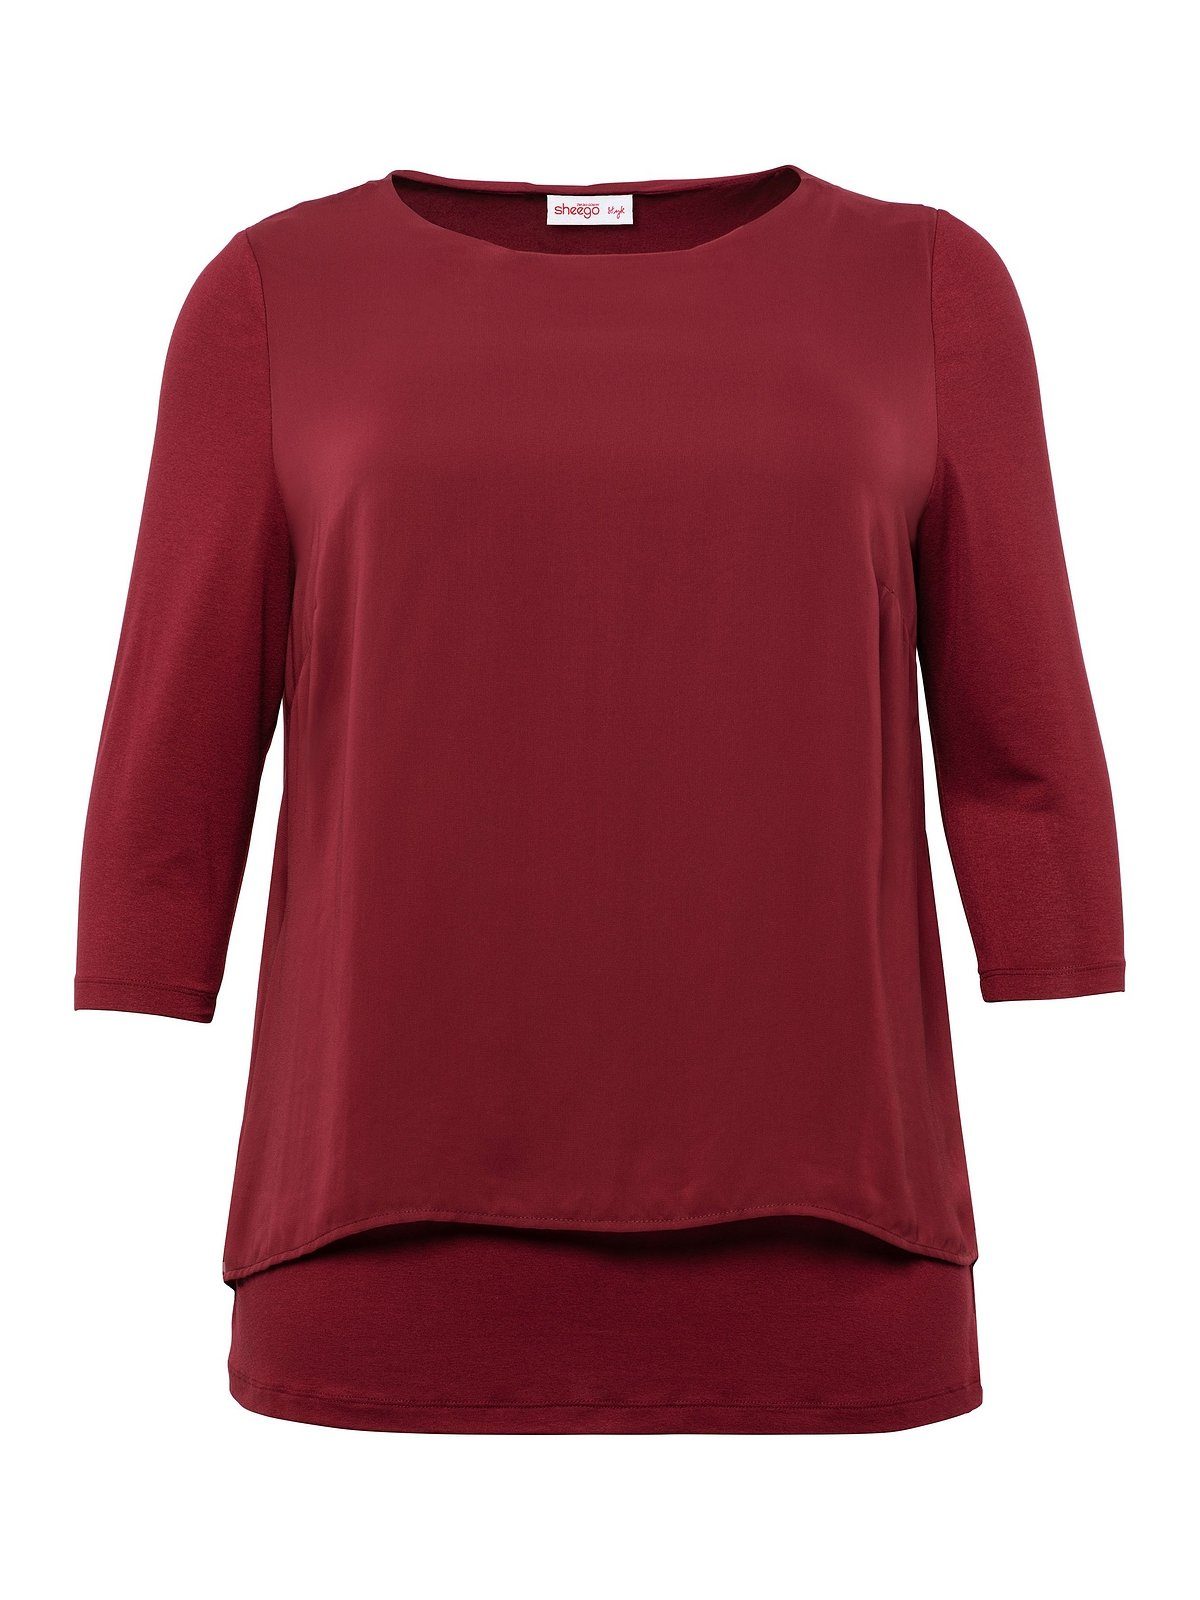 A-Linie Blusenshirt leichter Zipfelsaum mit Große Sheego rubinrot Größen in